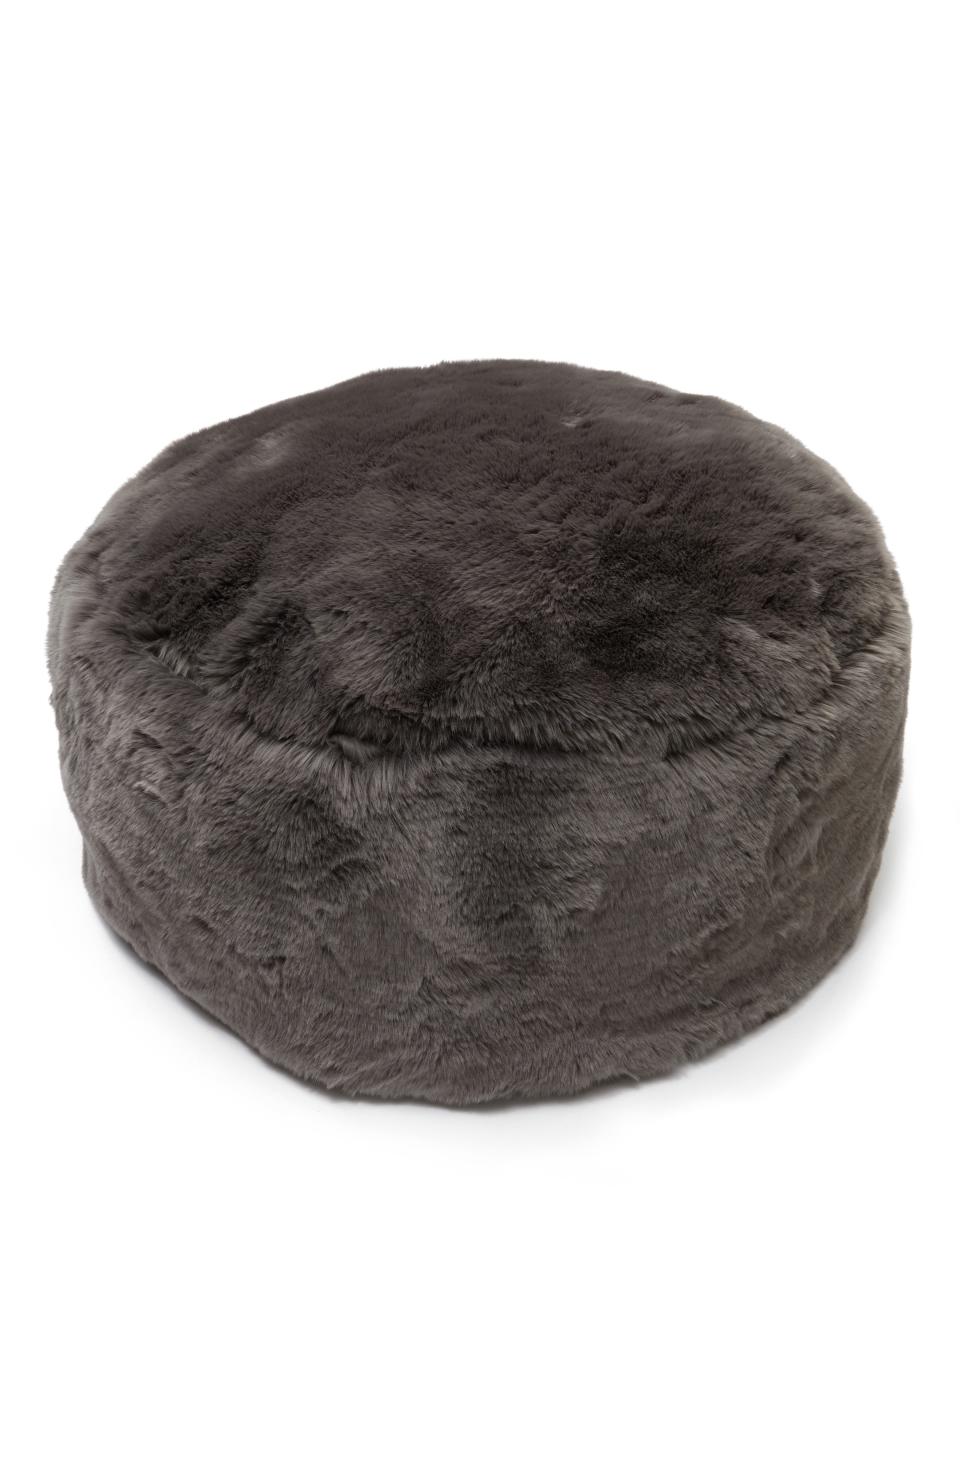 5) Cuddle Up Faux Fur Drum Pouf